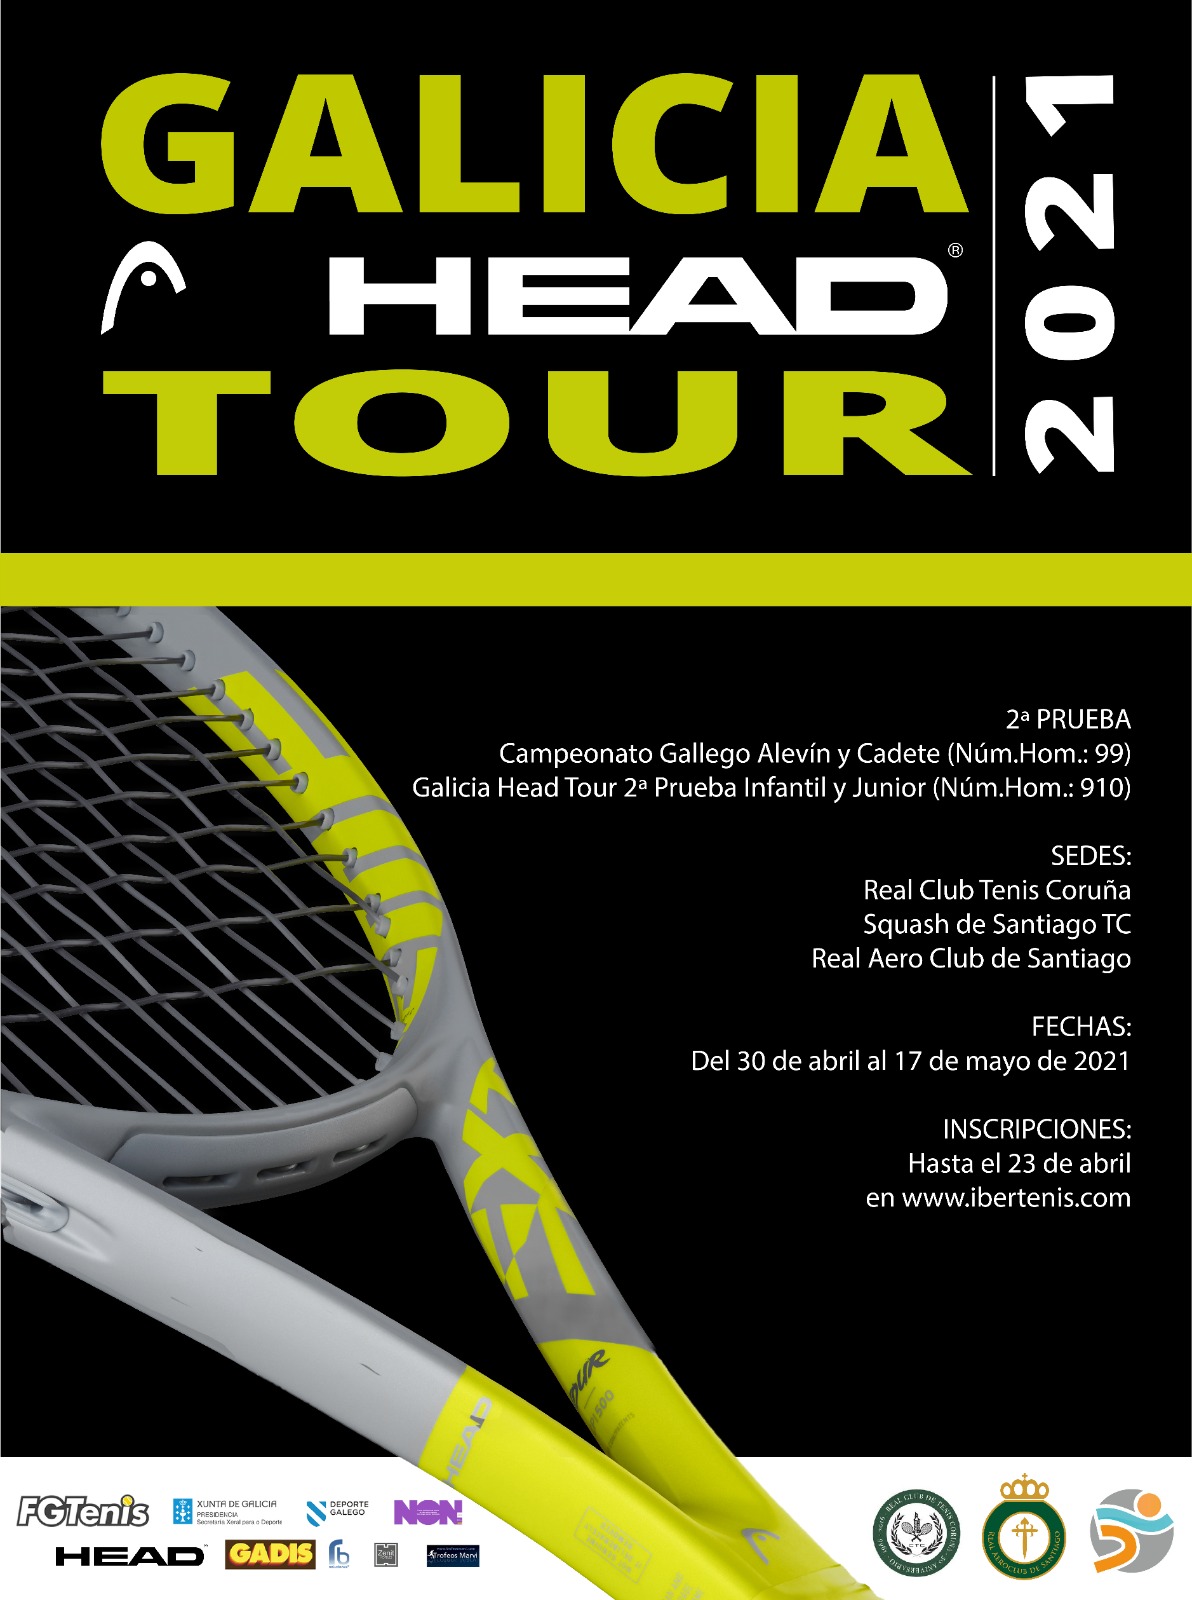 GALICIA HEAD TOUR - Campeonatos Gallegos Alevín y Cadete.  Torneo GHT Infantil y Junior 